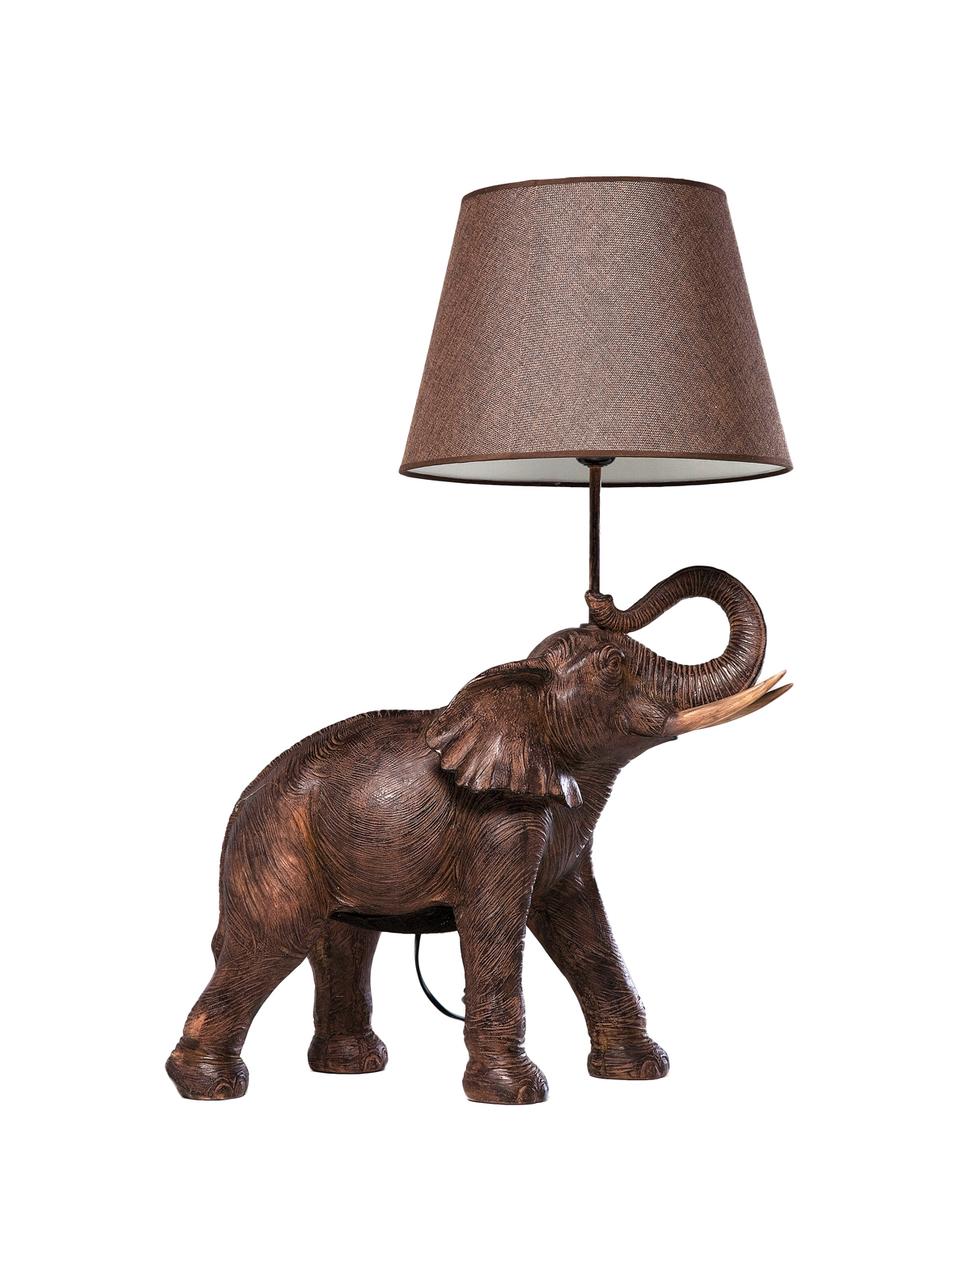 Lampa stołowa Elephant, Taupe, brązowy, S 52 x W 74 cm